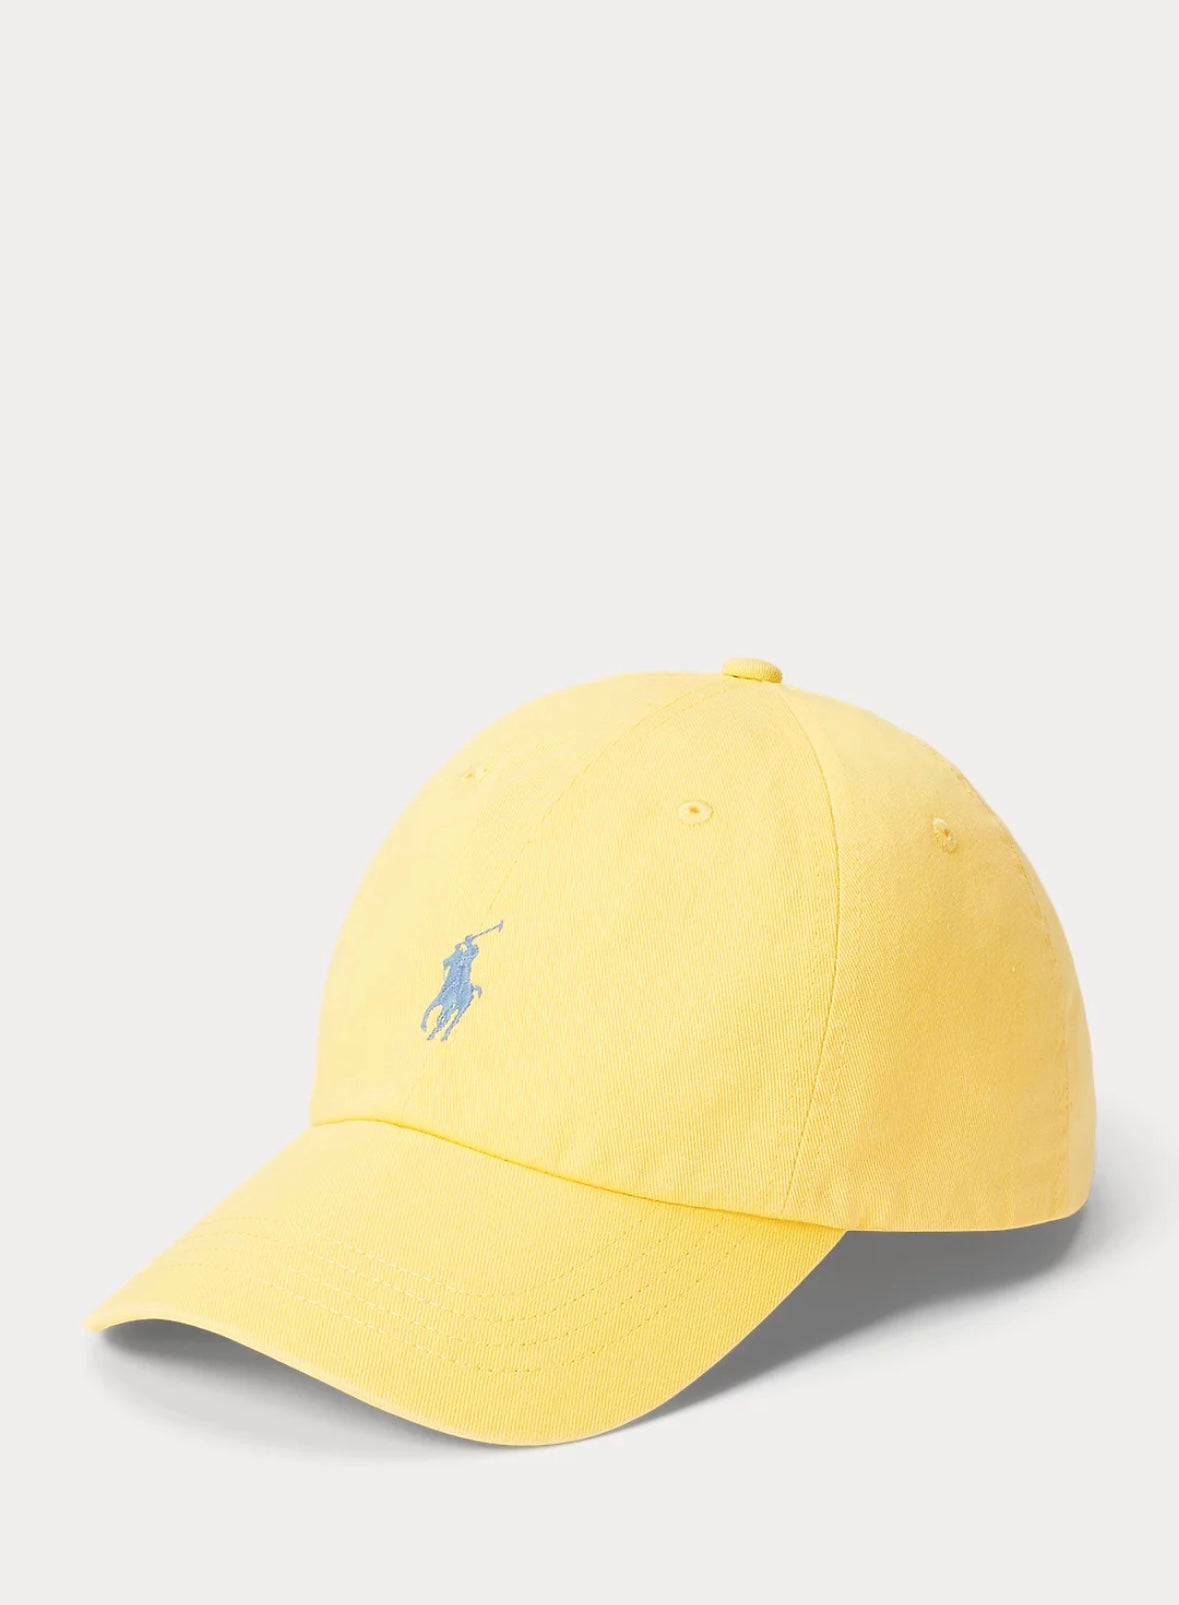 Polo Ralph Lauren caps - Oasis Yellow